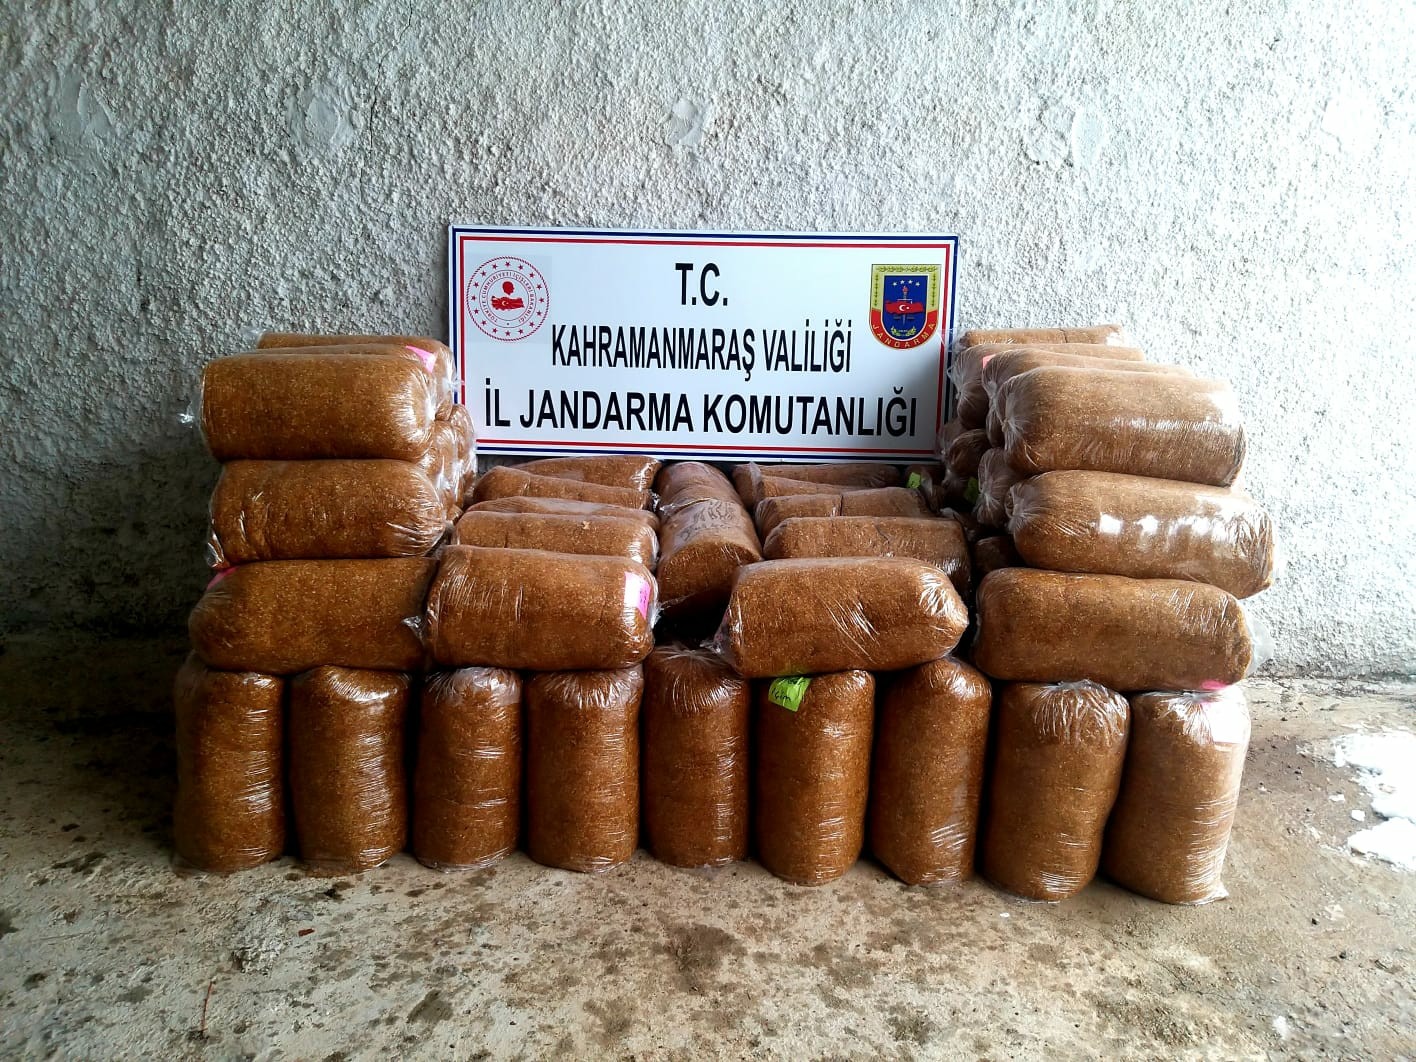 Kahramanmaraş’ta 210 kilogram kaçak tütün ele geçirildi #kahramanmaras